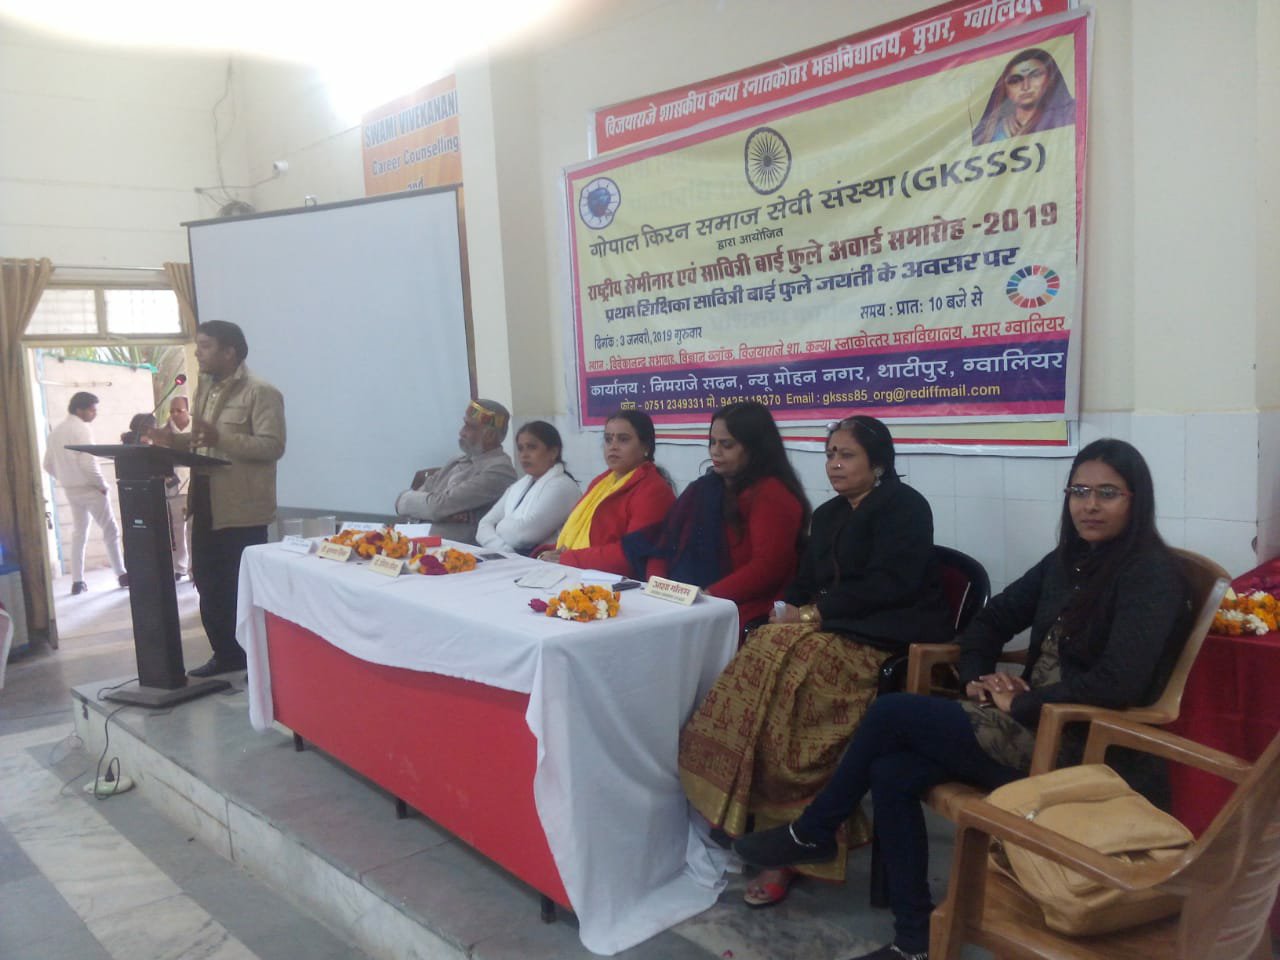 गोपाल किरन समाज सेवी संस्था द्वारा सावित्रीमाई फुले जयंती के अवसर पर सेमिनार आयोजित कर महिलाओं को किया गया सम्मानित | New India Times